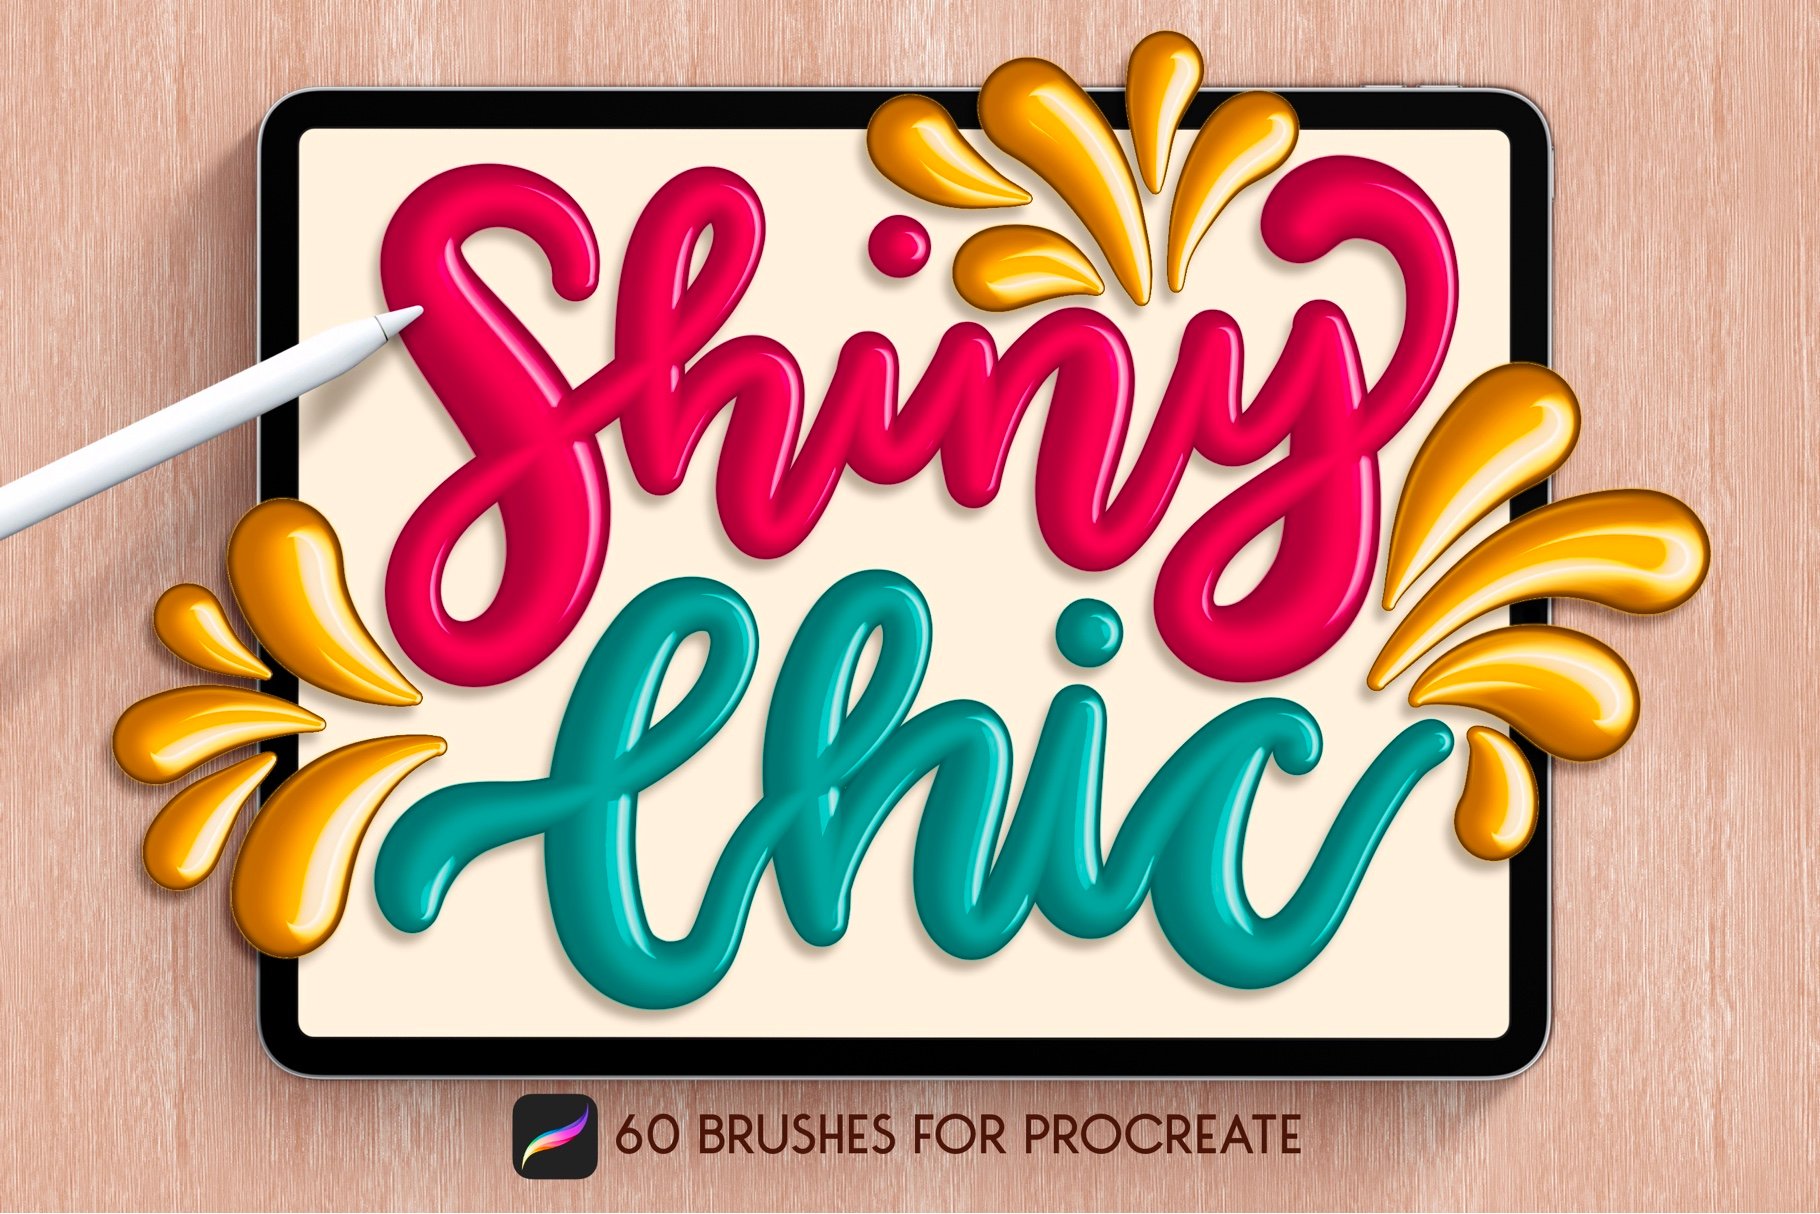 shiny chic procreate brushes free